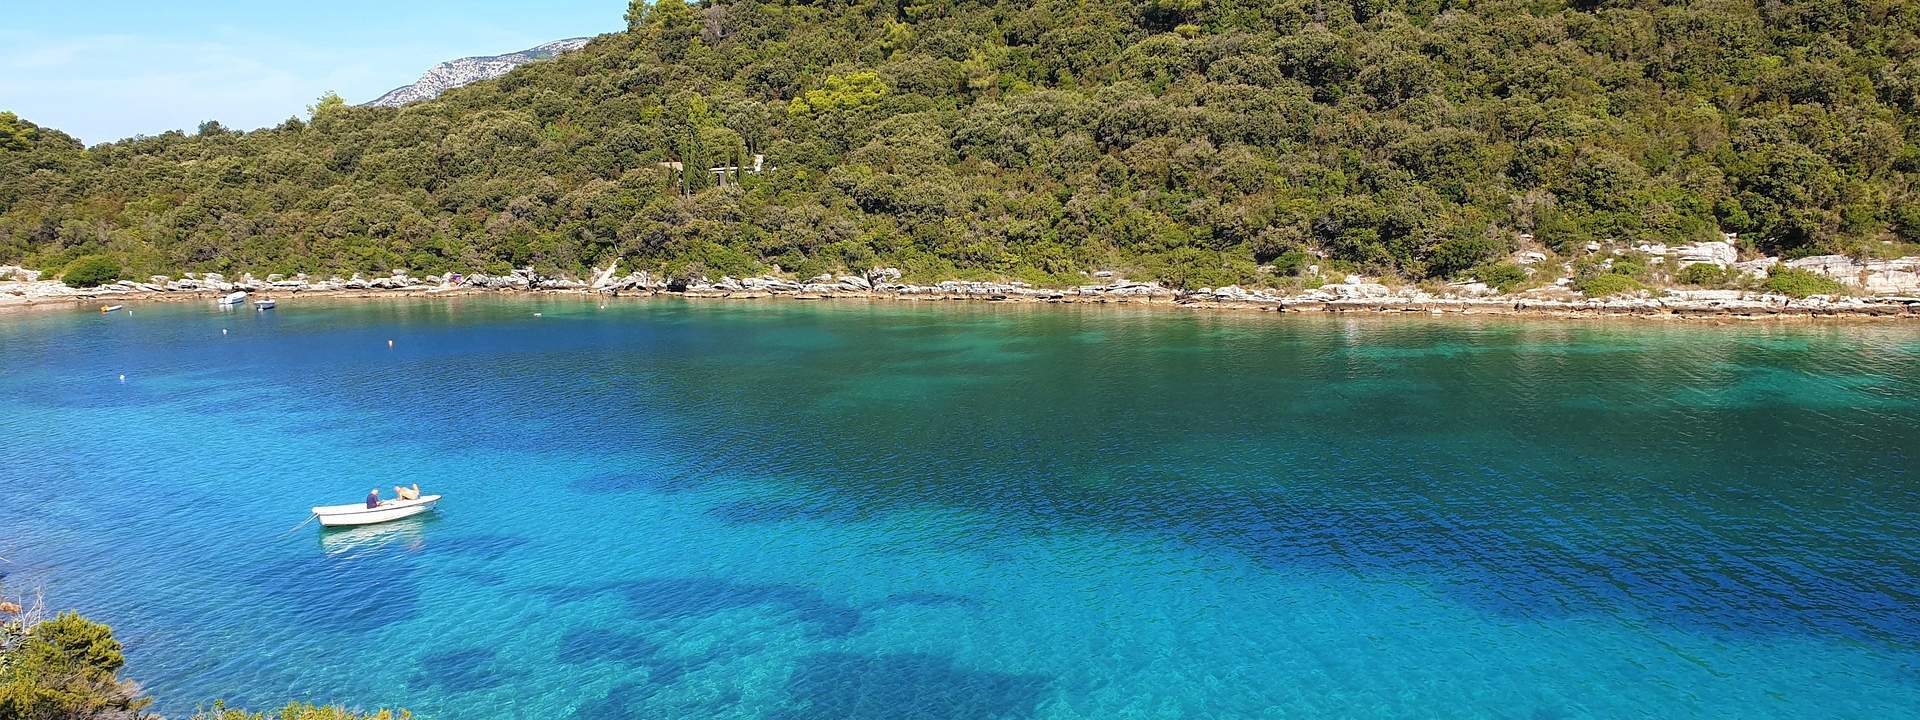 Entdecken Sie die schönsten Ecken der dalmatinischen Inseln